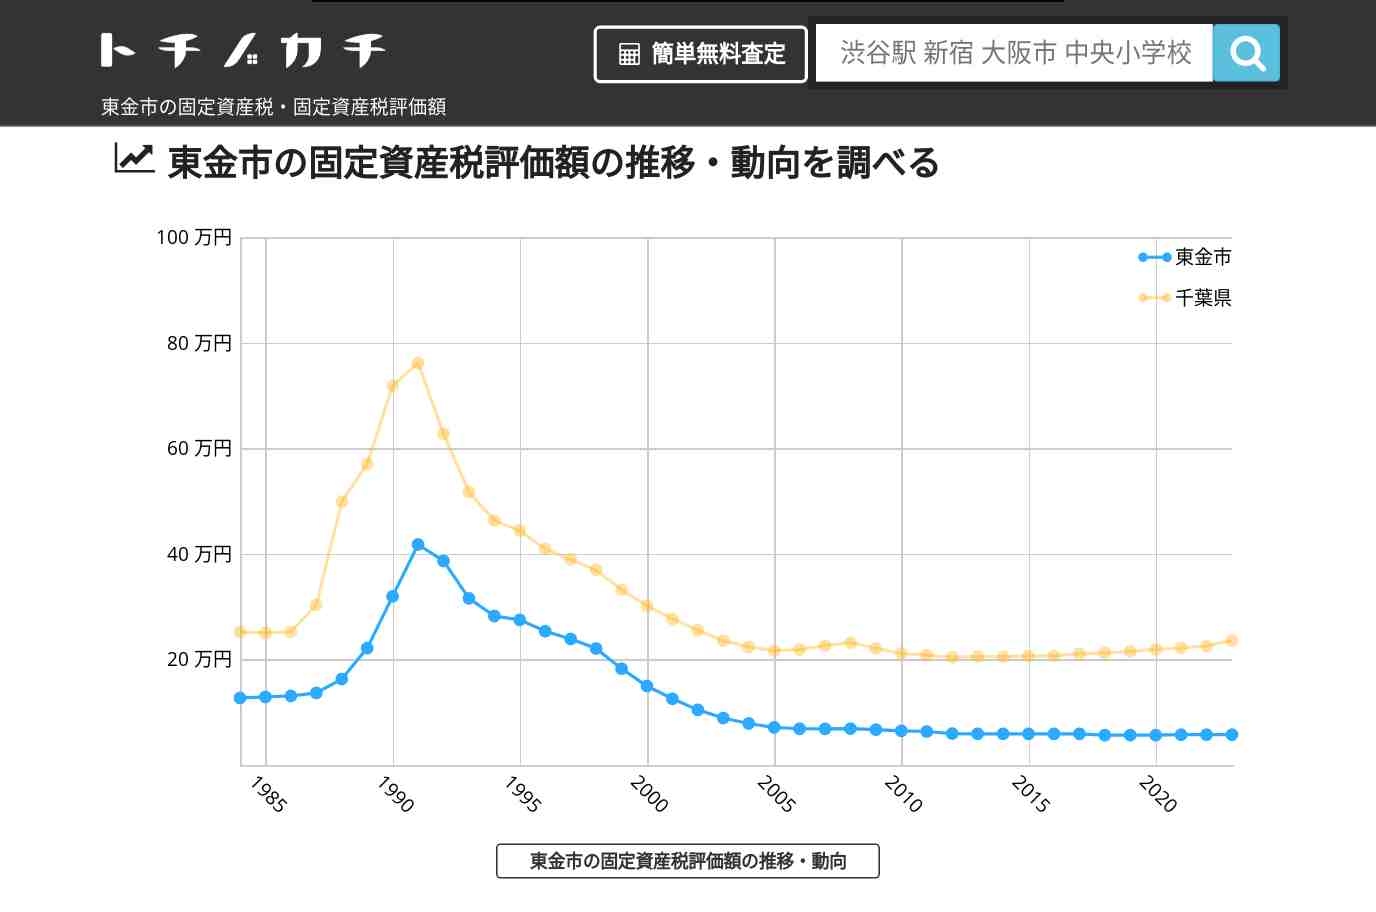 丘山小学校(千葉県 東金市)周辺の固定資産税・固定資産税評価額 | トチノカチ